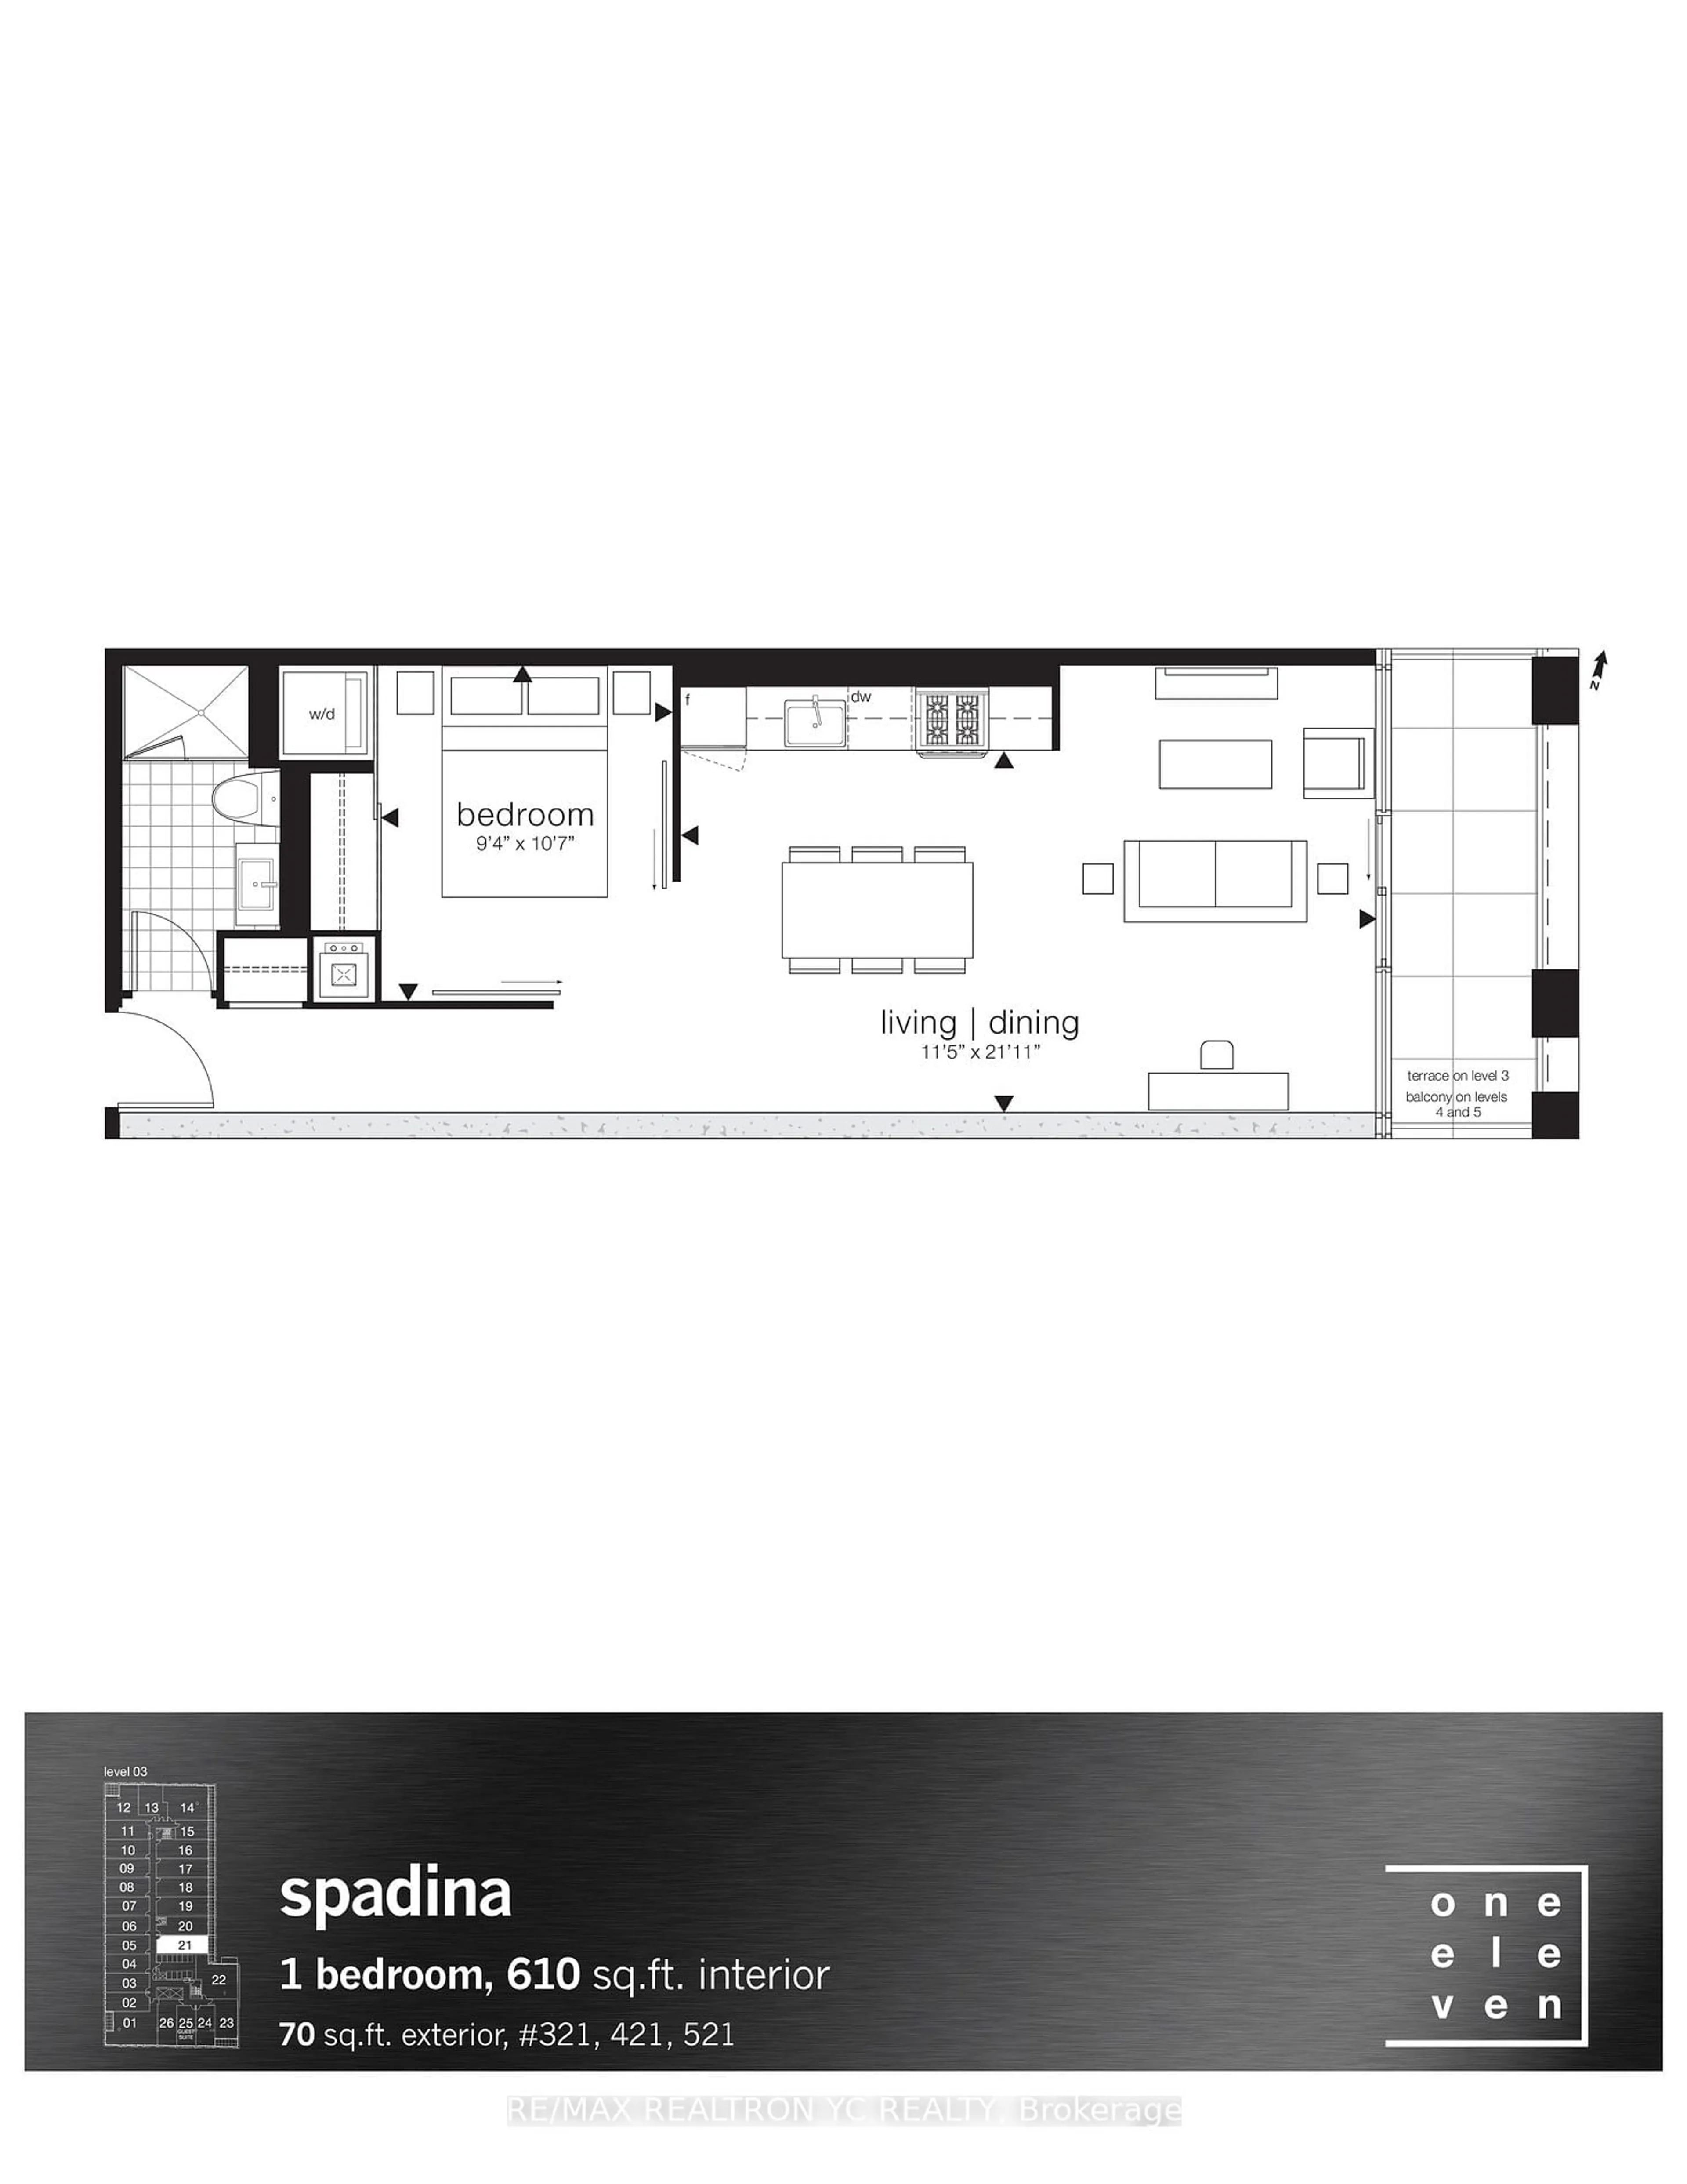 Floor plan for 111 Bathurst St #321, Toronto Ontario M5V 0H7